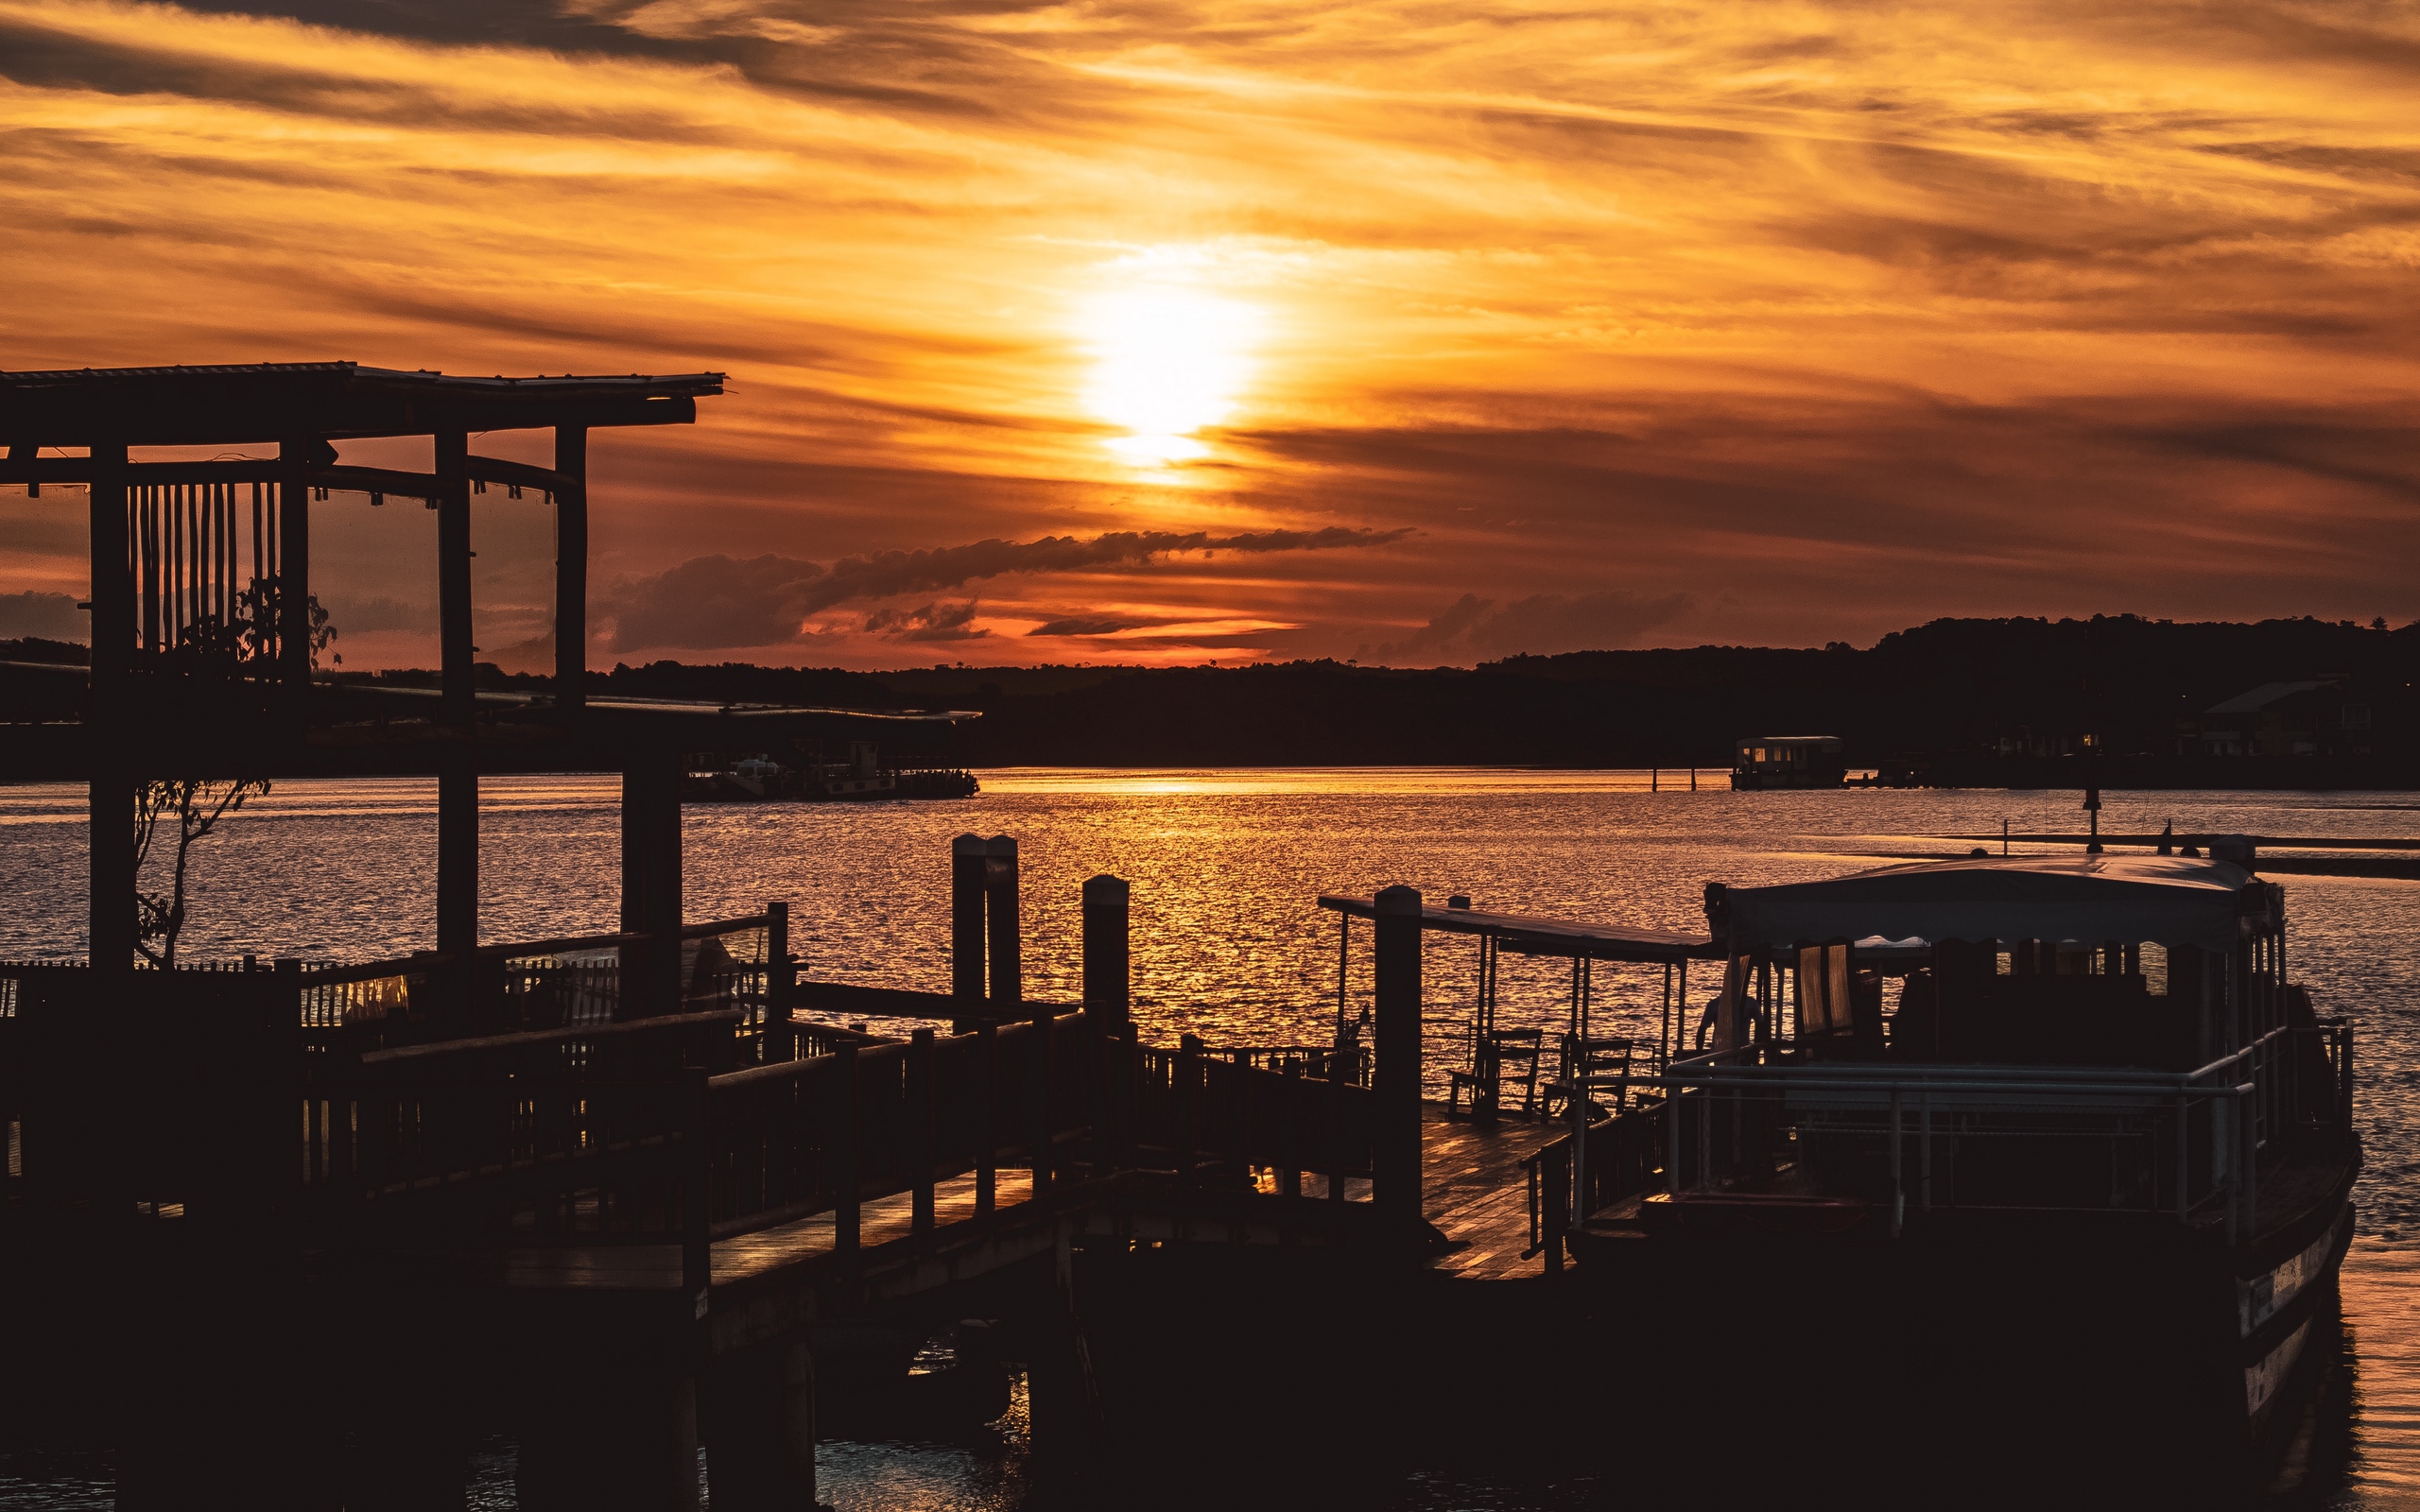 Download wallpaper 2560x1600 sunset, pier, river, evening